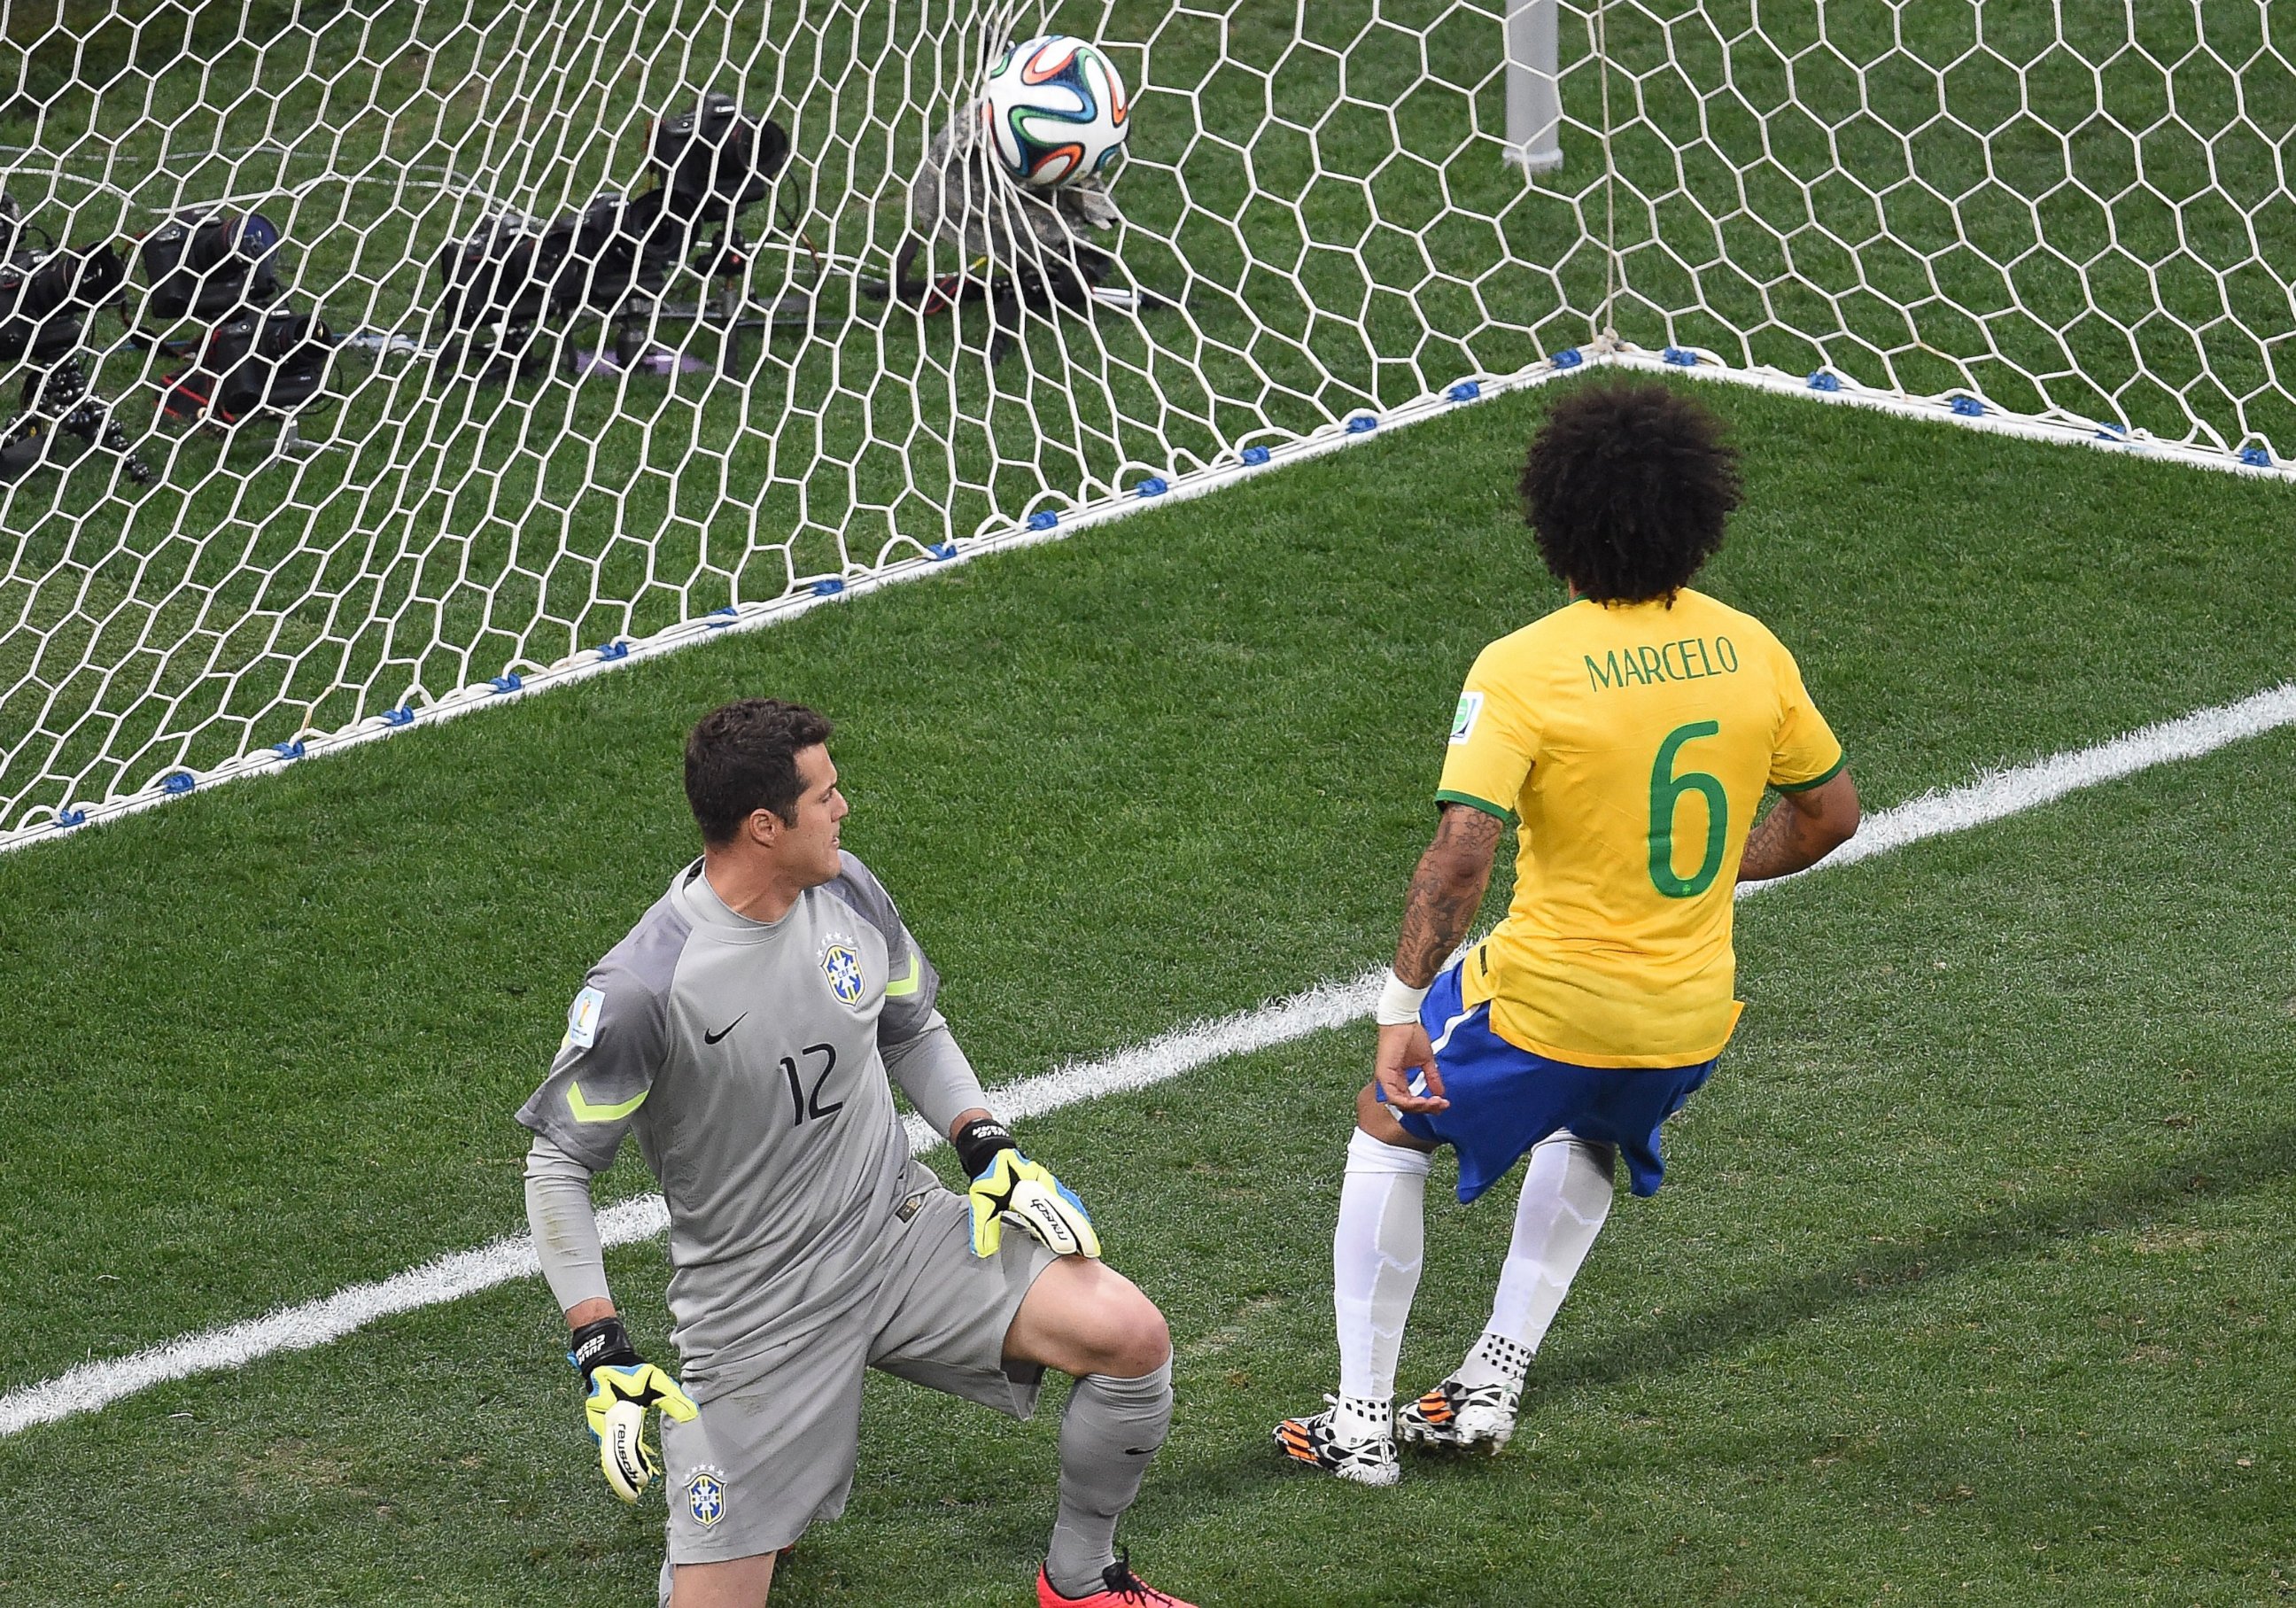 PHOTO: Brazil's defender Marcelo scores an own goal